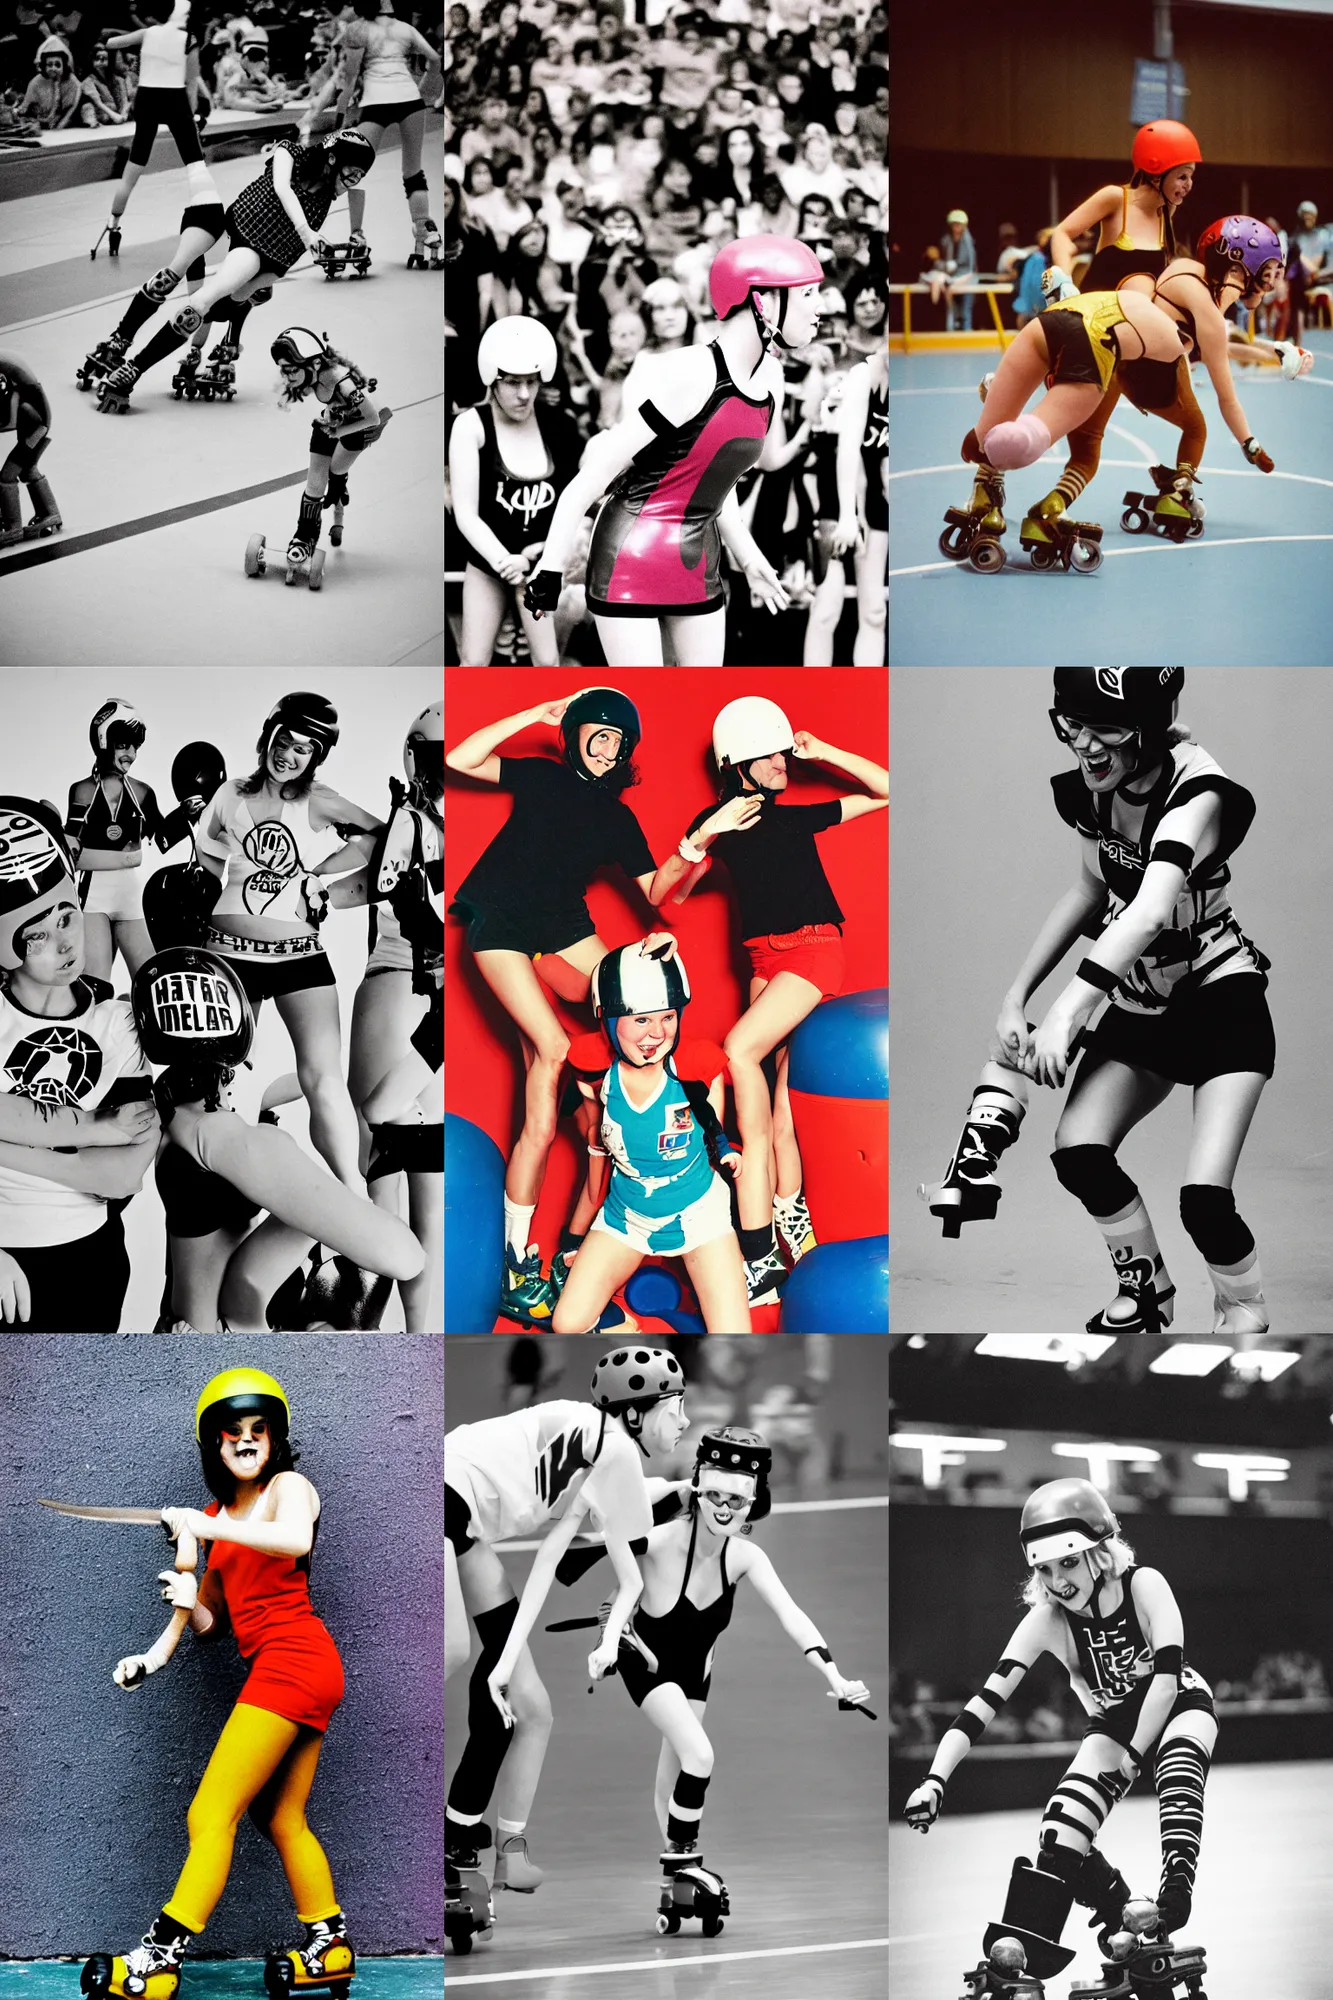 Prompt: roller derby girl battle, wearing skate helmet, logo design, high contrast portra 400, 1970s